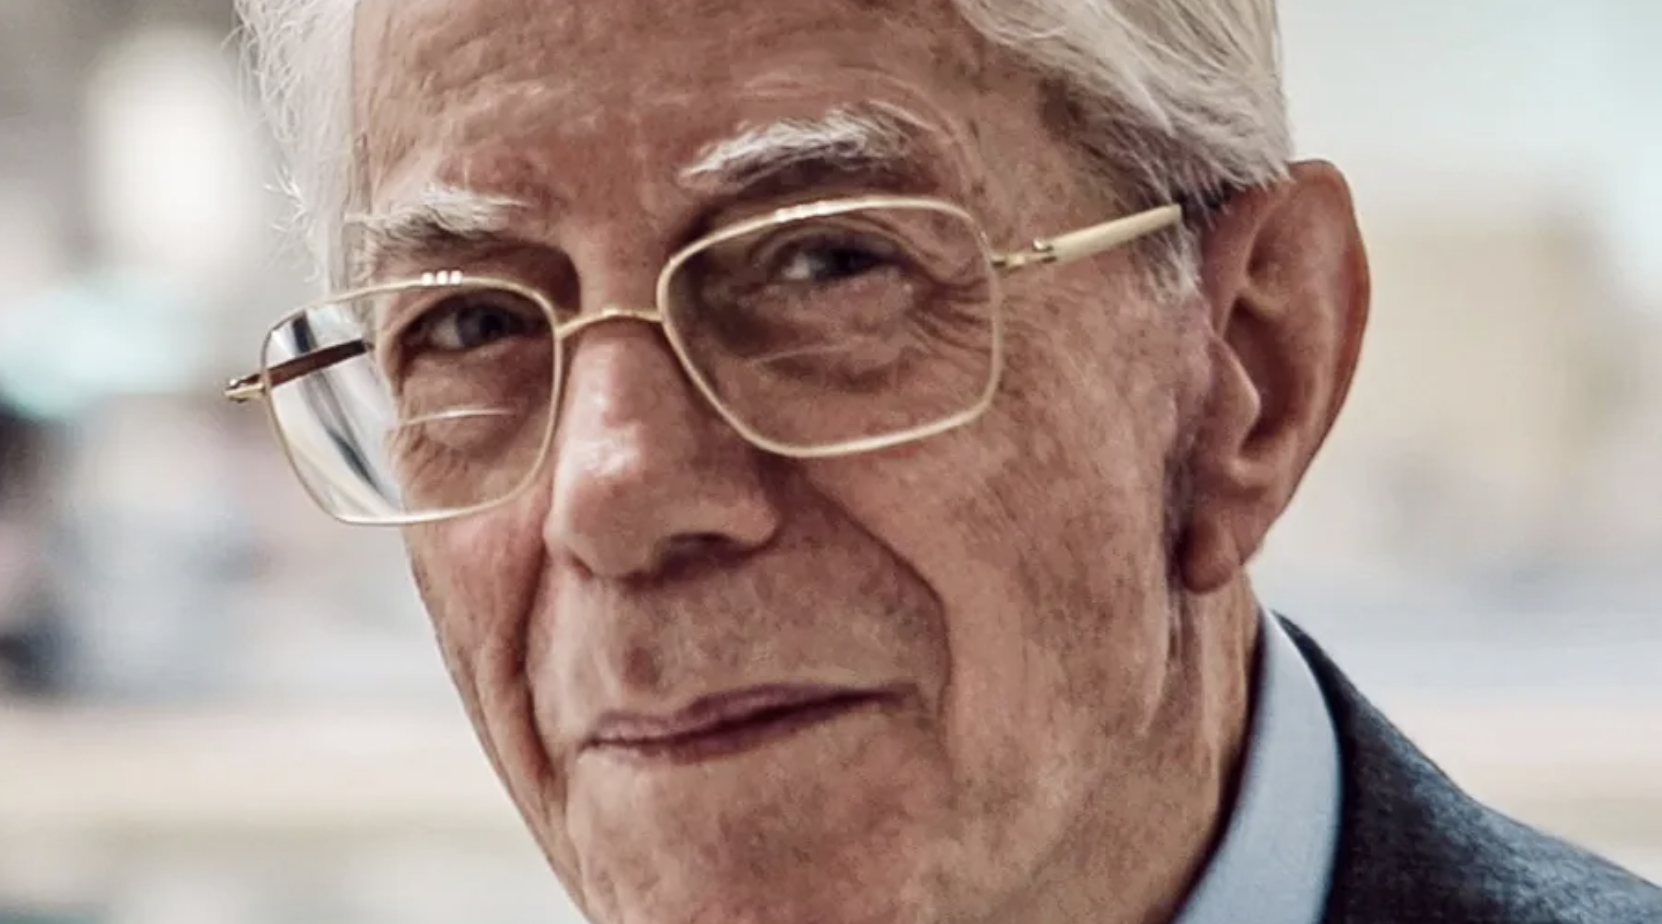 意大利奢华男装品牌 Canali 第二代掌门人 Eugenio Canali 逝世，享年91岁